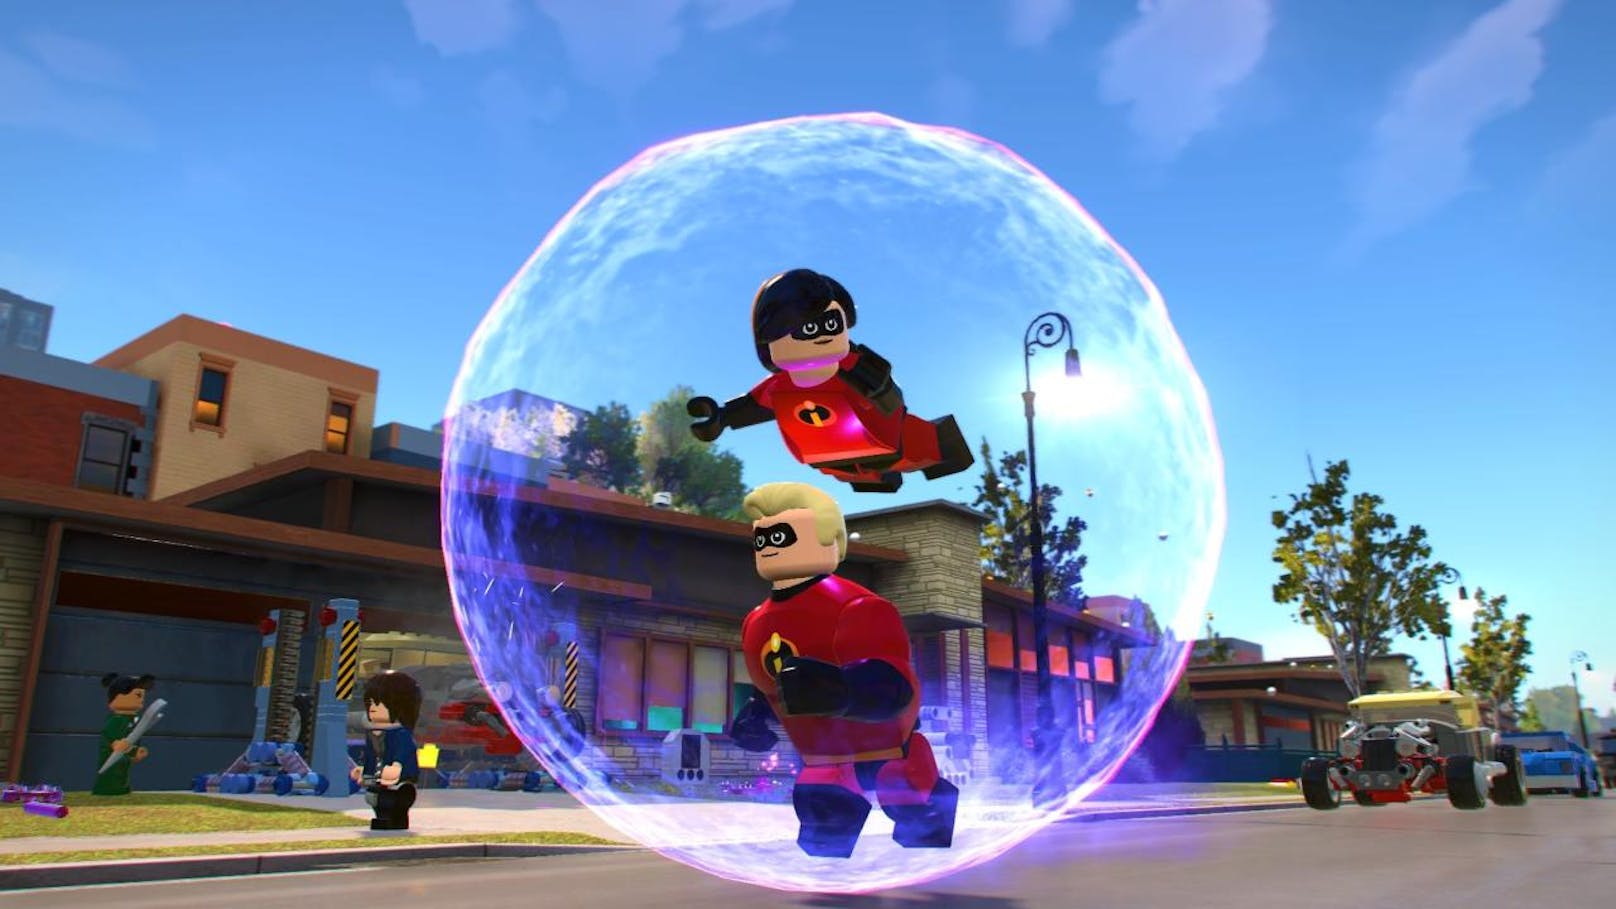  <a href="https://www.heute.at/digital/games/story/Die-Unglaublichen-sind-vor-allem-unglaublich-witzig-41965554" target="_blank">LEGO Disney Pixar's Die Ungaublichen</a>